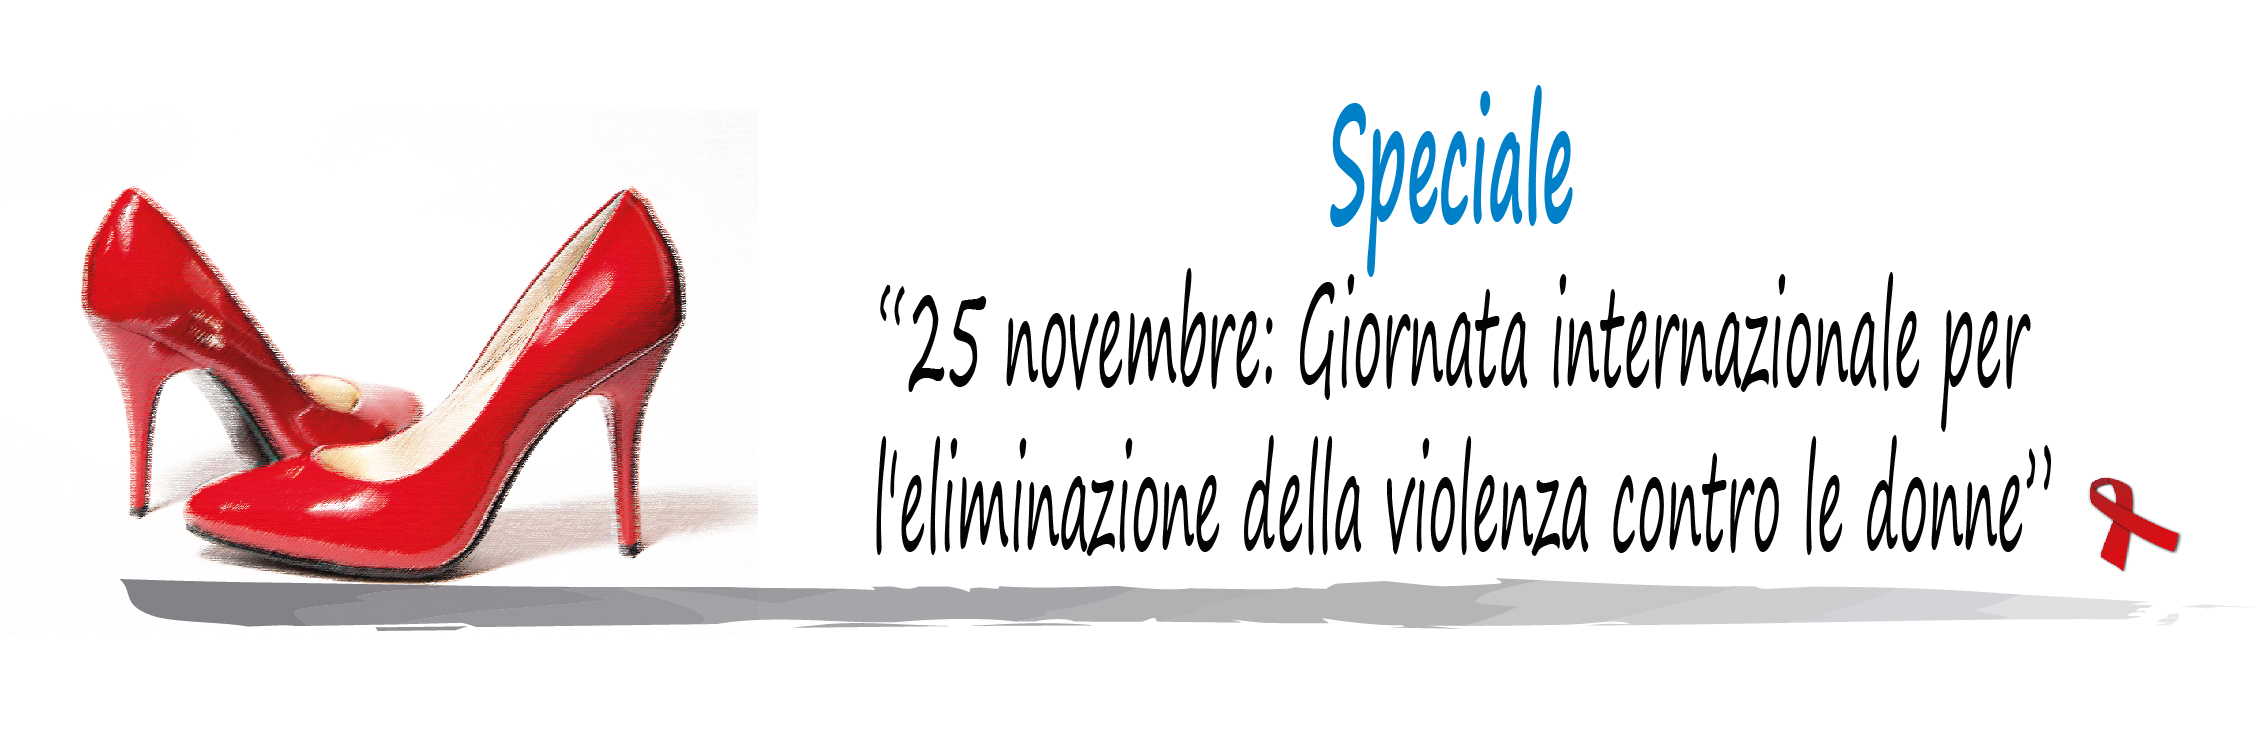 Immagine di due scarpe rosse sulla sinistra e sulla destra il testo "Speciale: 25 novembre Giornata internazionale per l'eliminazione della violenza contro le donne"